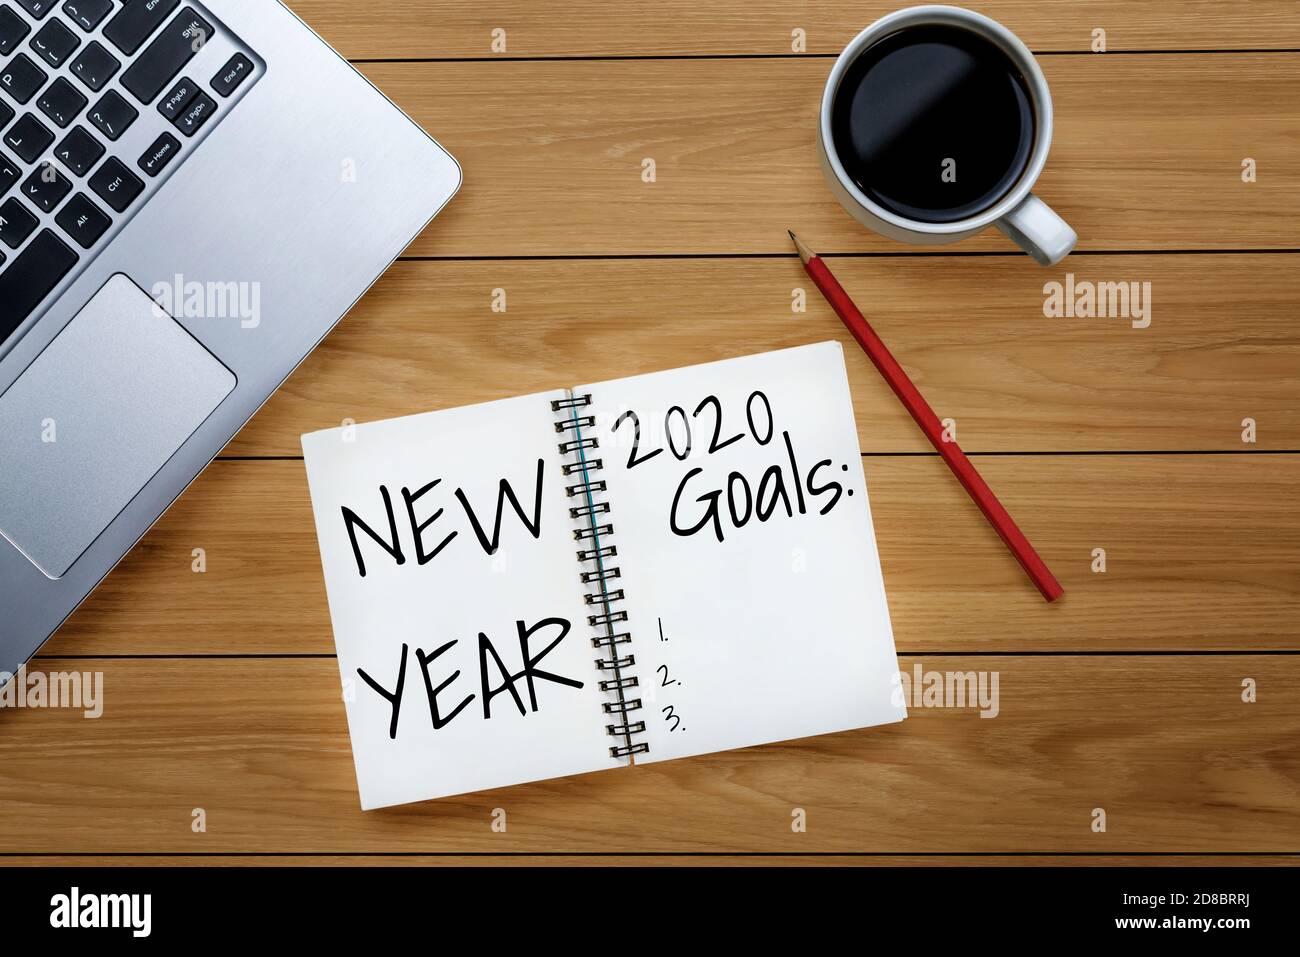 Neujahrsauflösung Zielliste 2020 - Business Office Desk Mit handgeschriebendem Notizbuch über die Planauflistung der neuen Jahresziele und -Beschlüsse Stockfoto